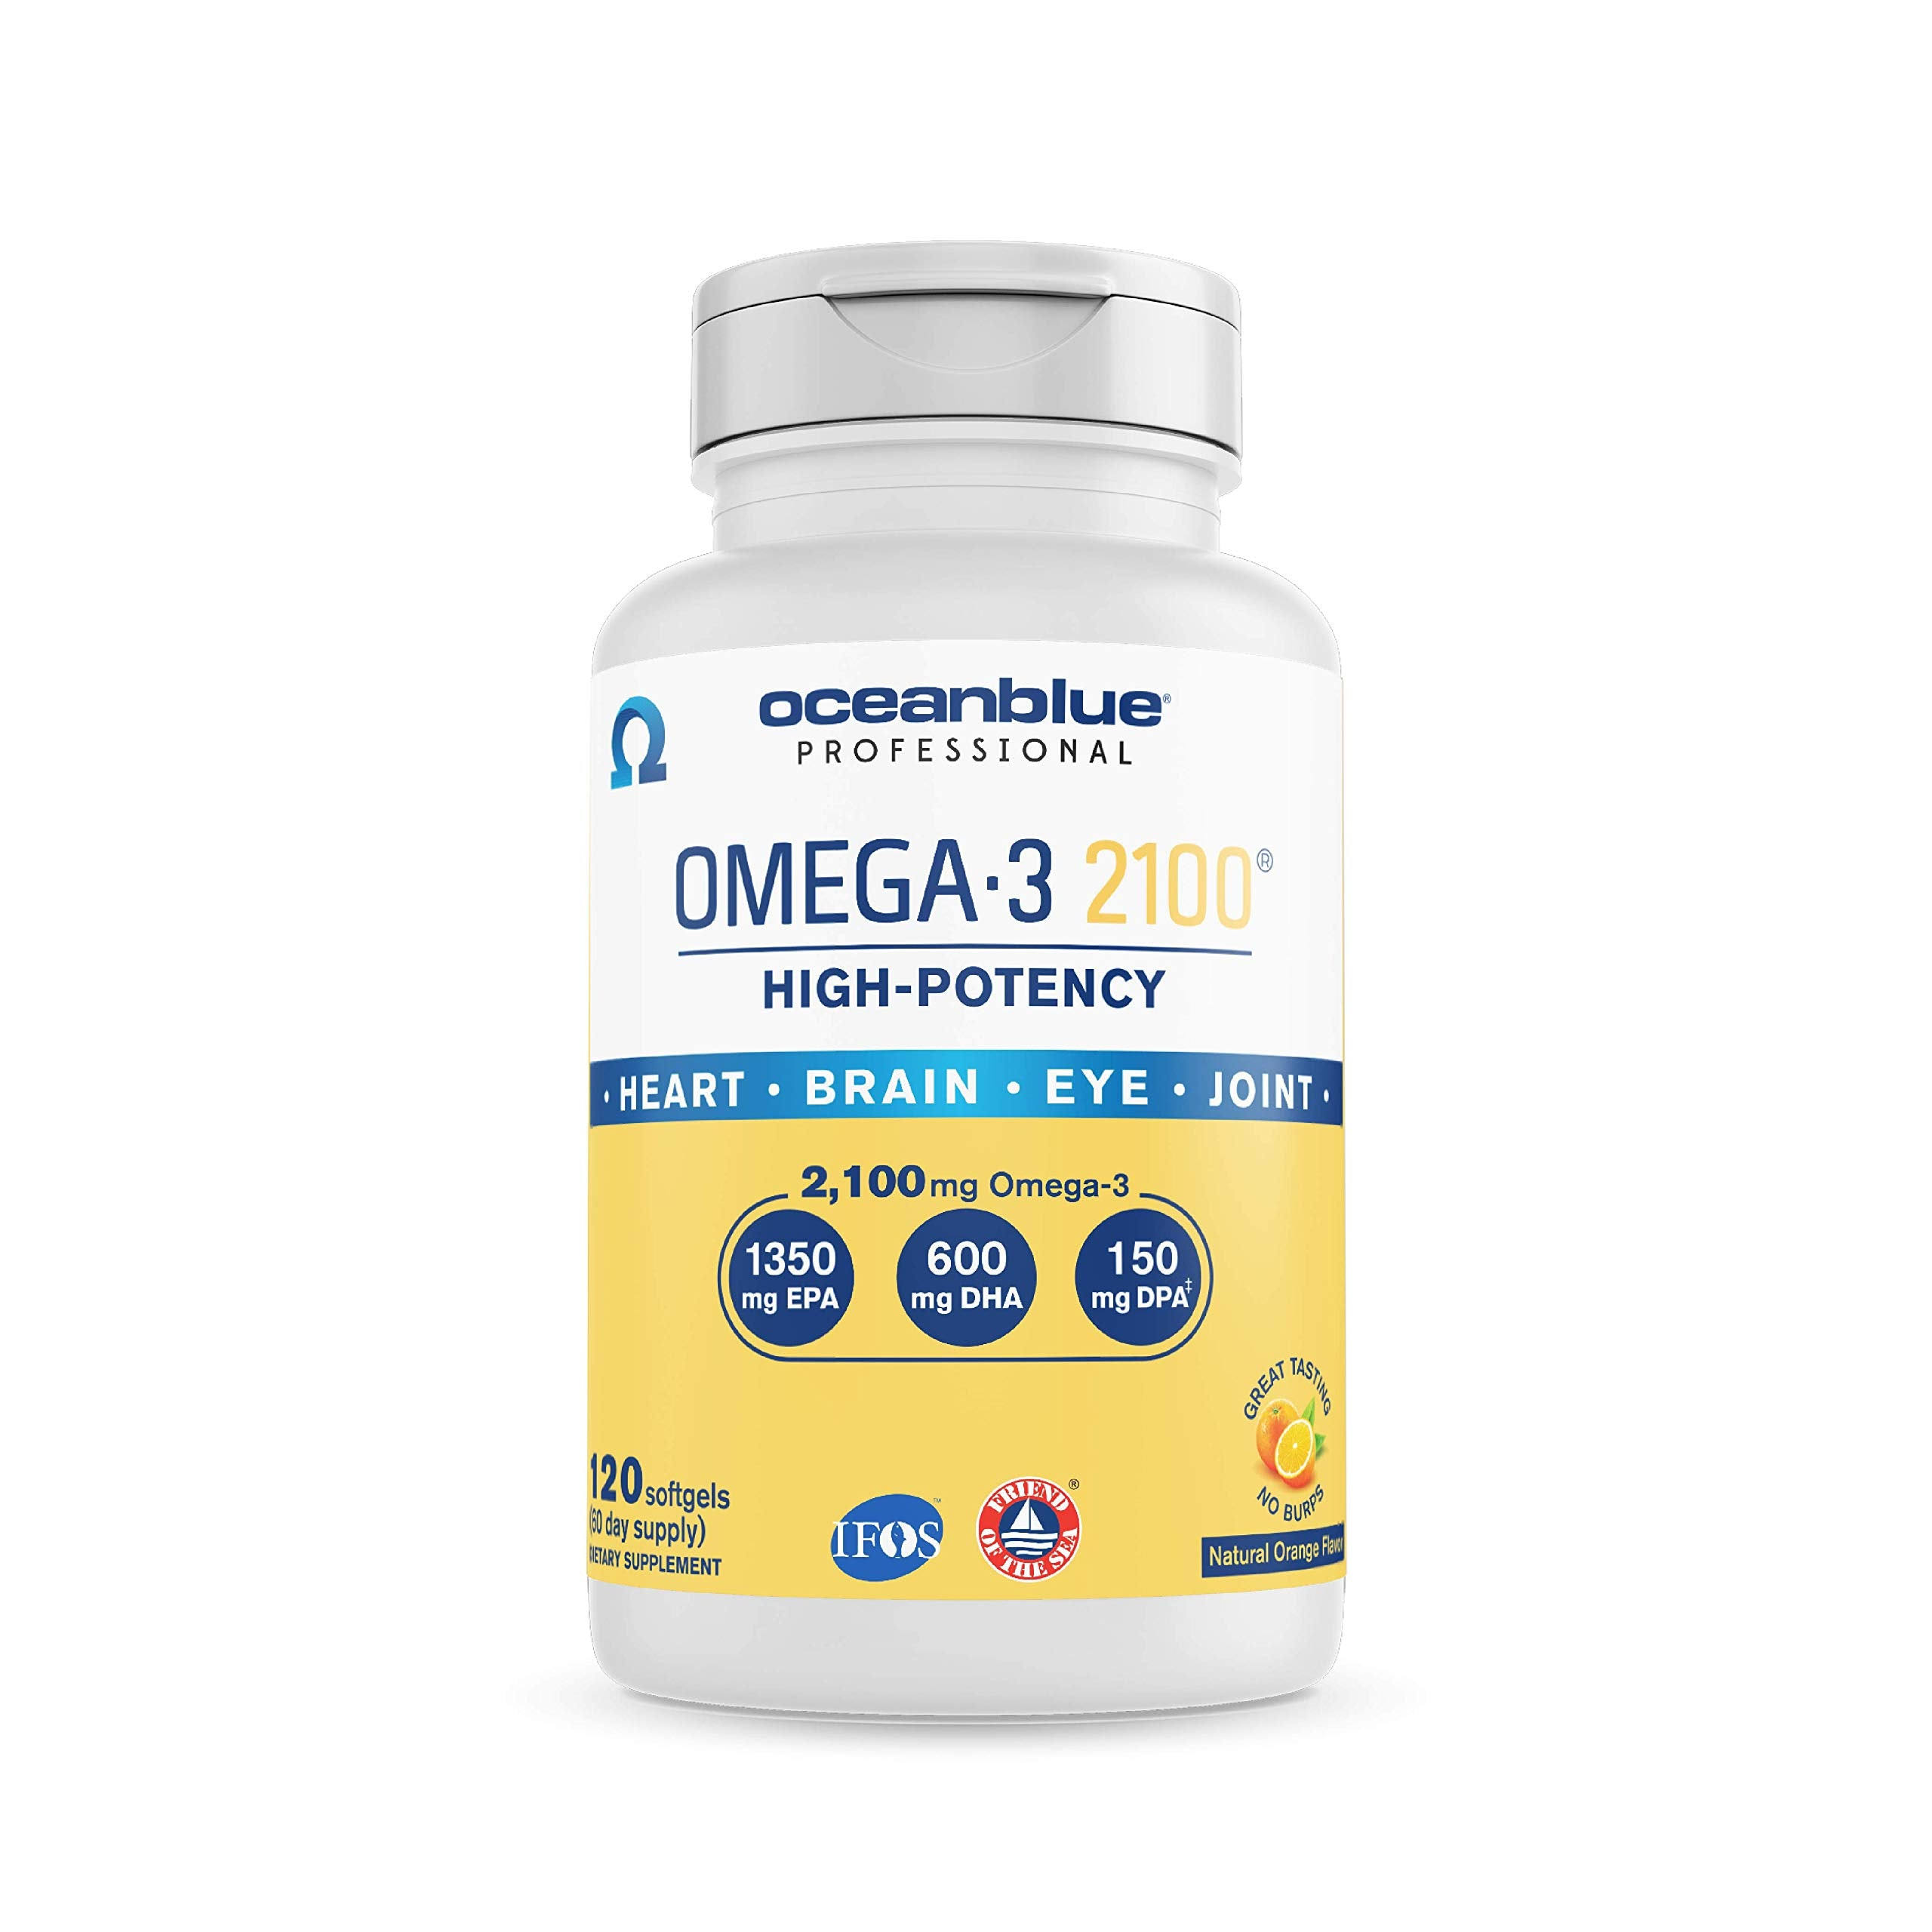 Oceanblue Professional 2100 Omega-3, Softgels, Natural Orange Flavor - 120 softgels